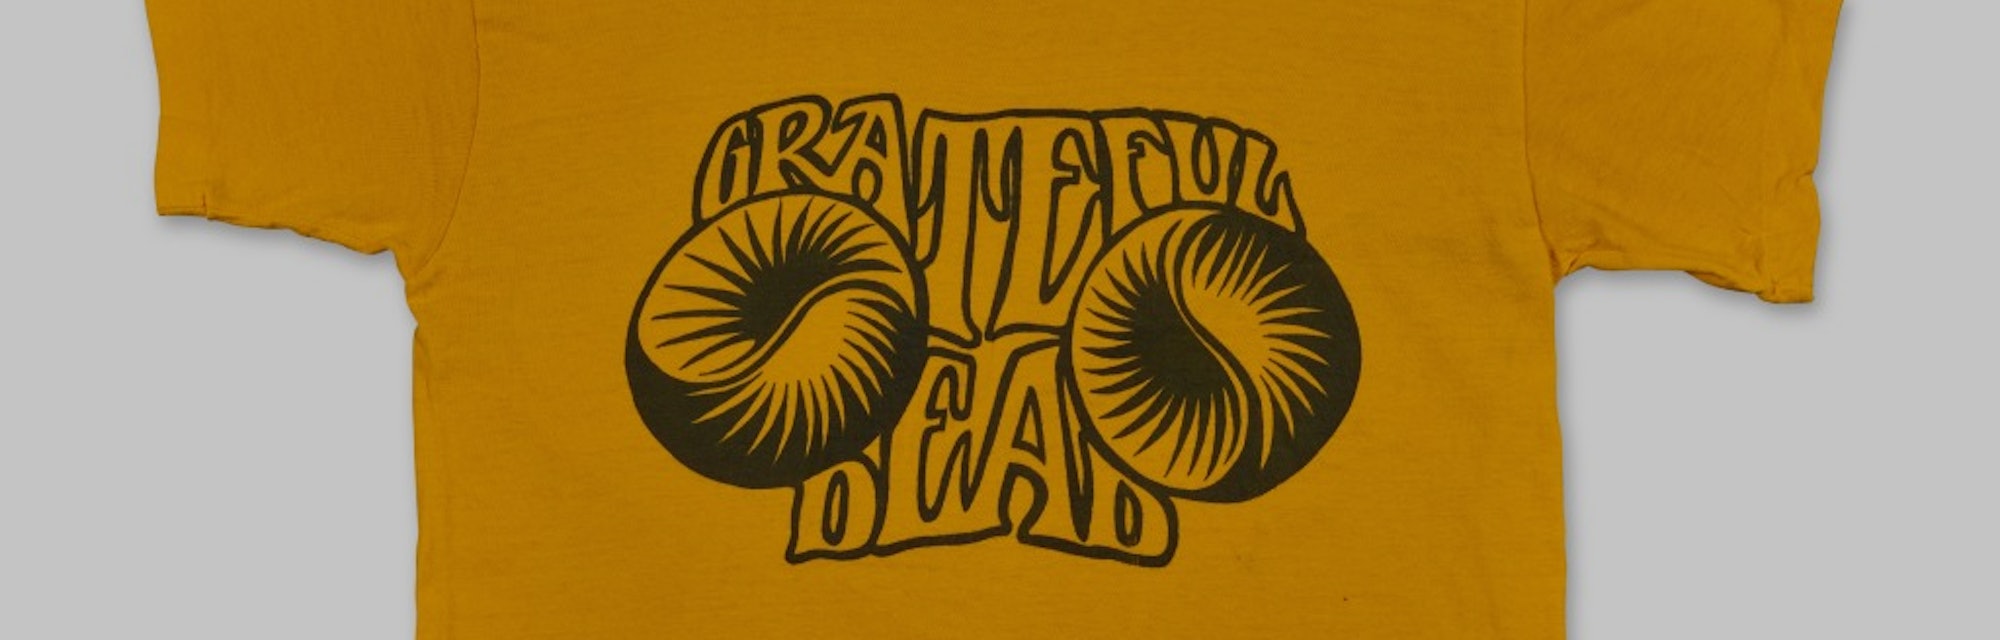 Grateful Dead T-shirt auction